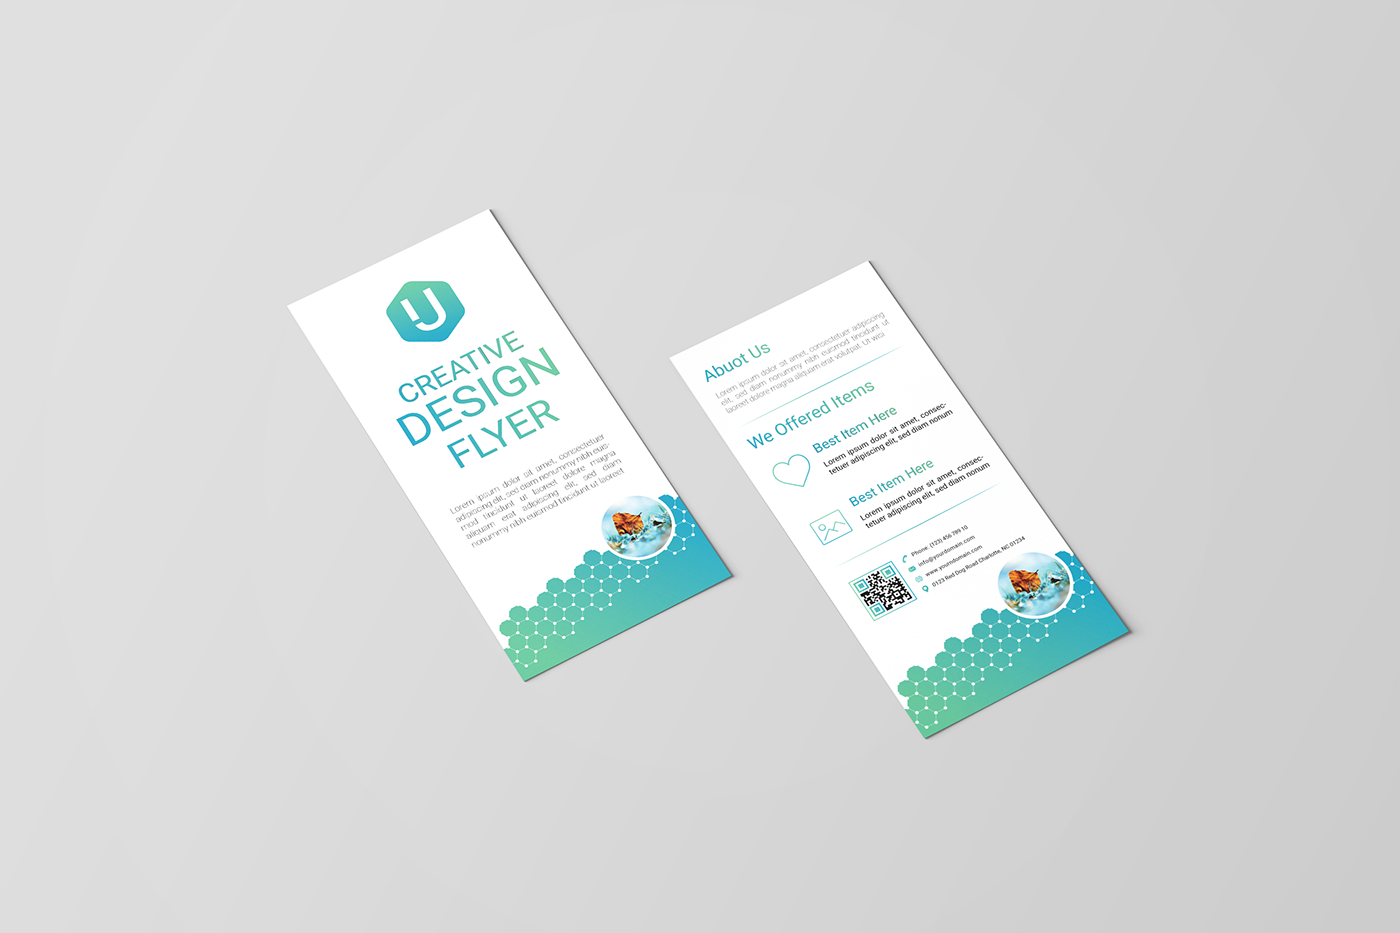 DL flyer creative dl Flyer Design flyer template flyer design graphic design  pamphlet portfolio dl flyer